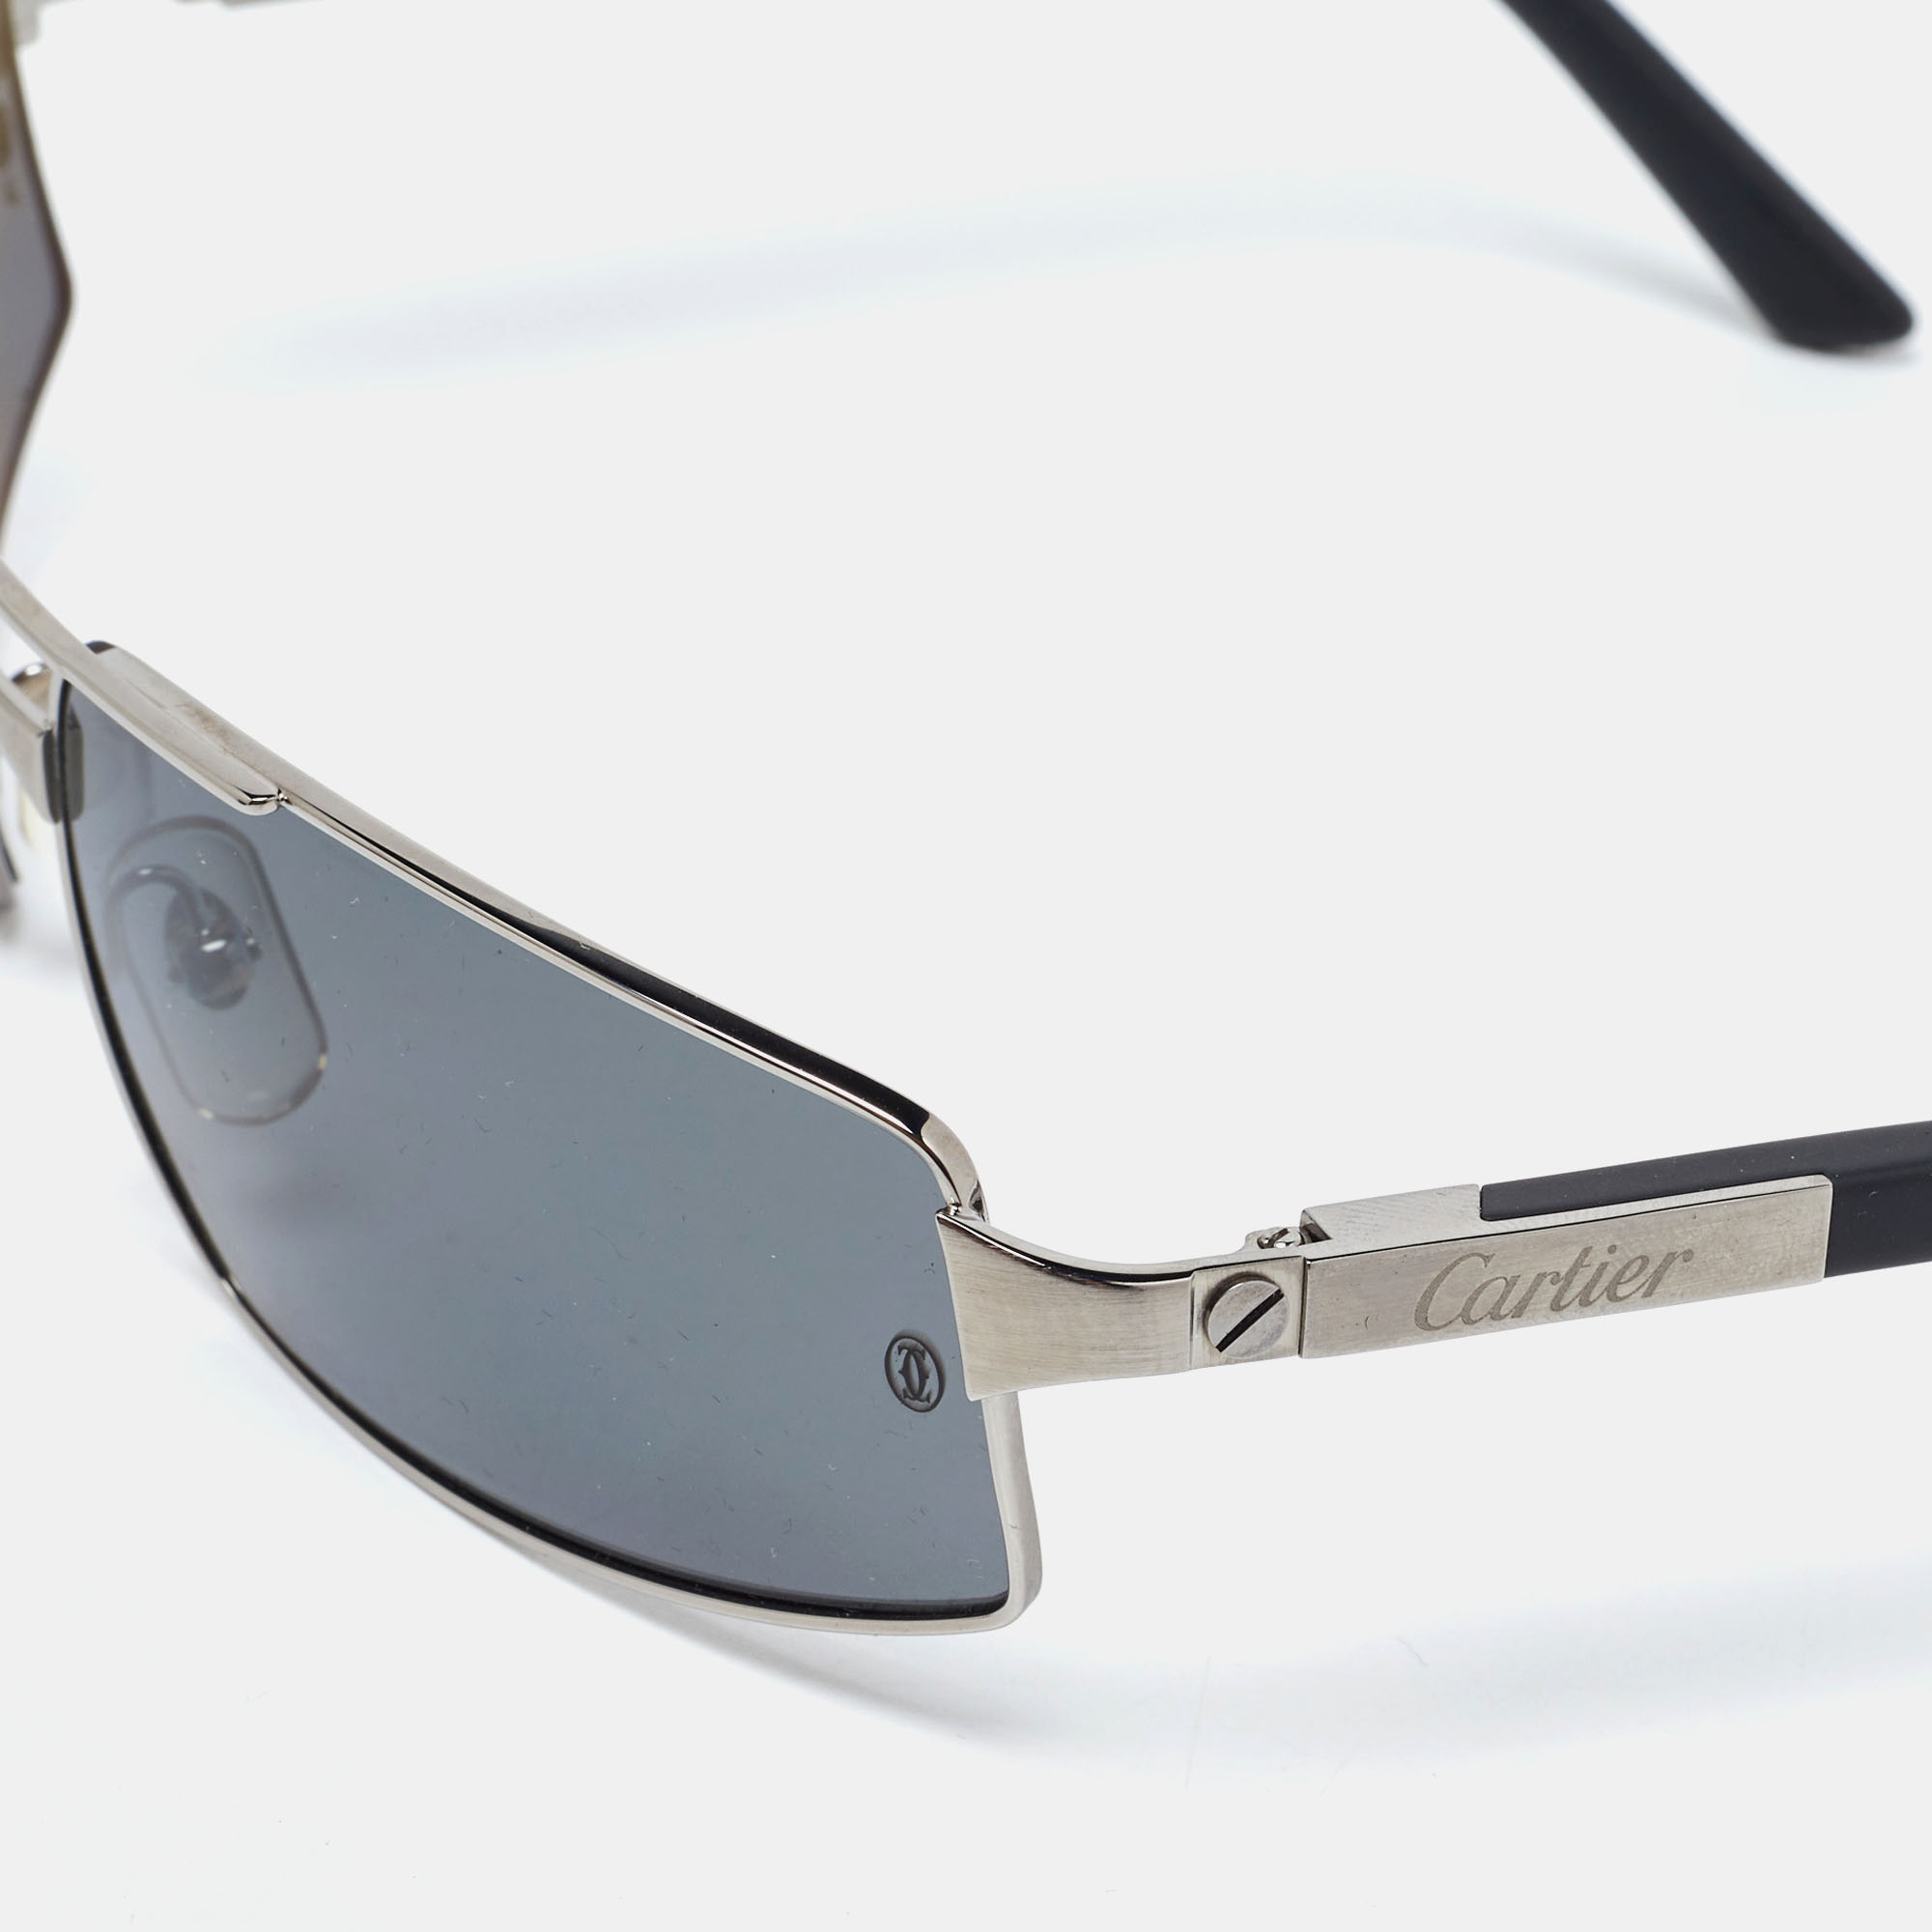 

Cartier Silver Tone/Grey Santos Galaxy Rectangle Sunglasses